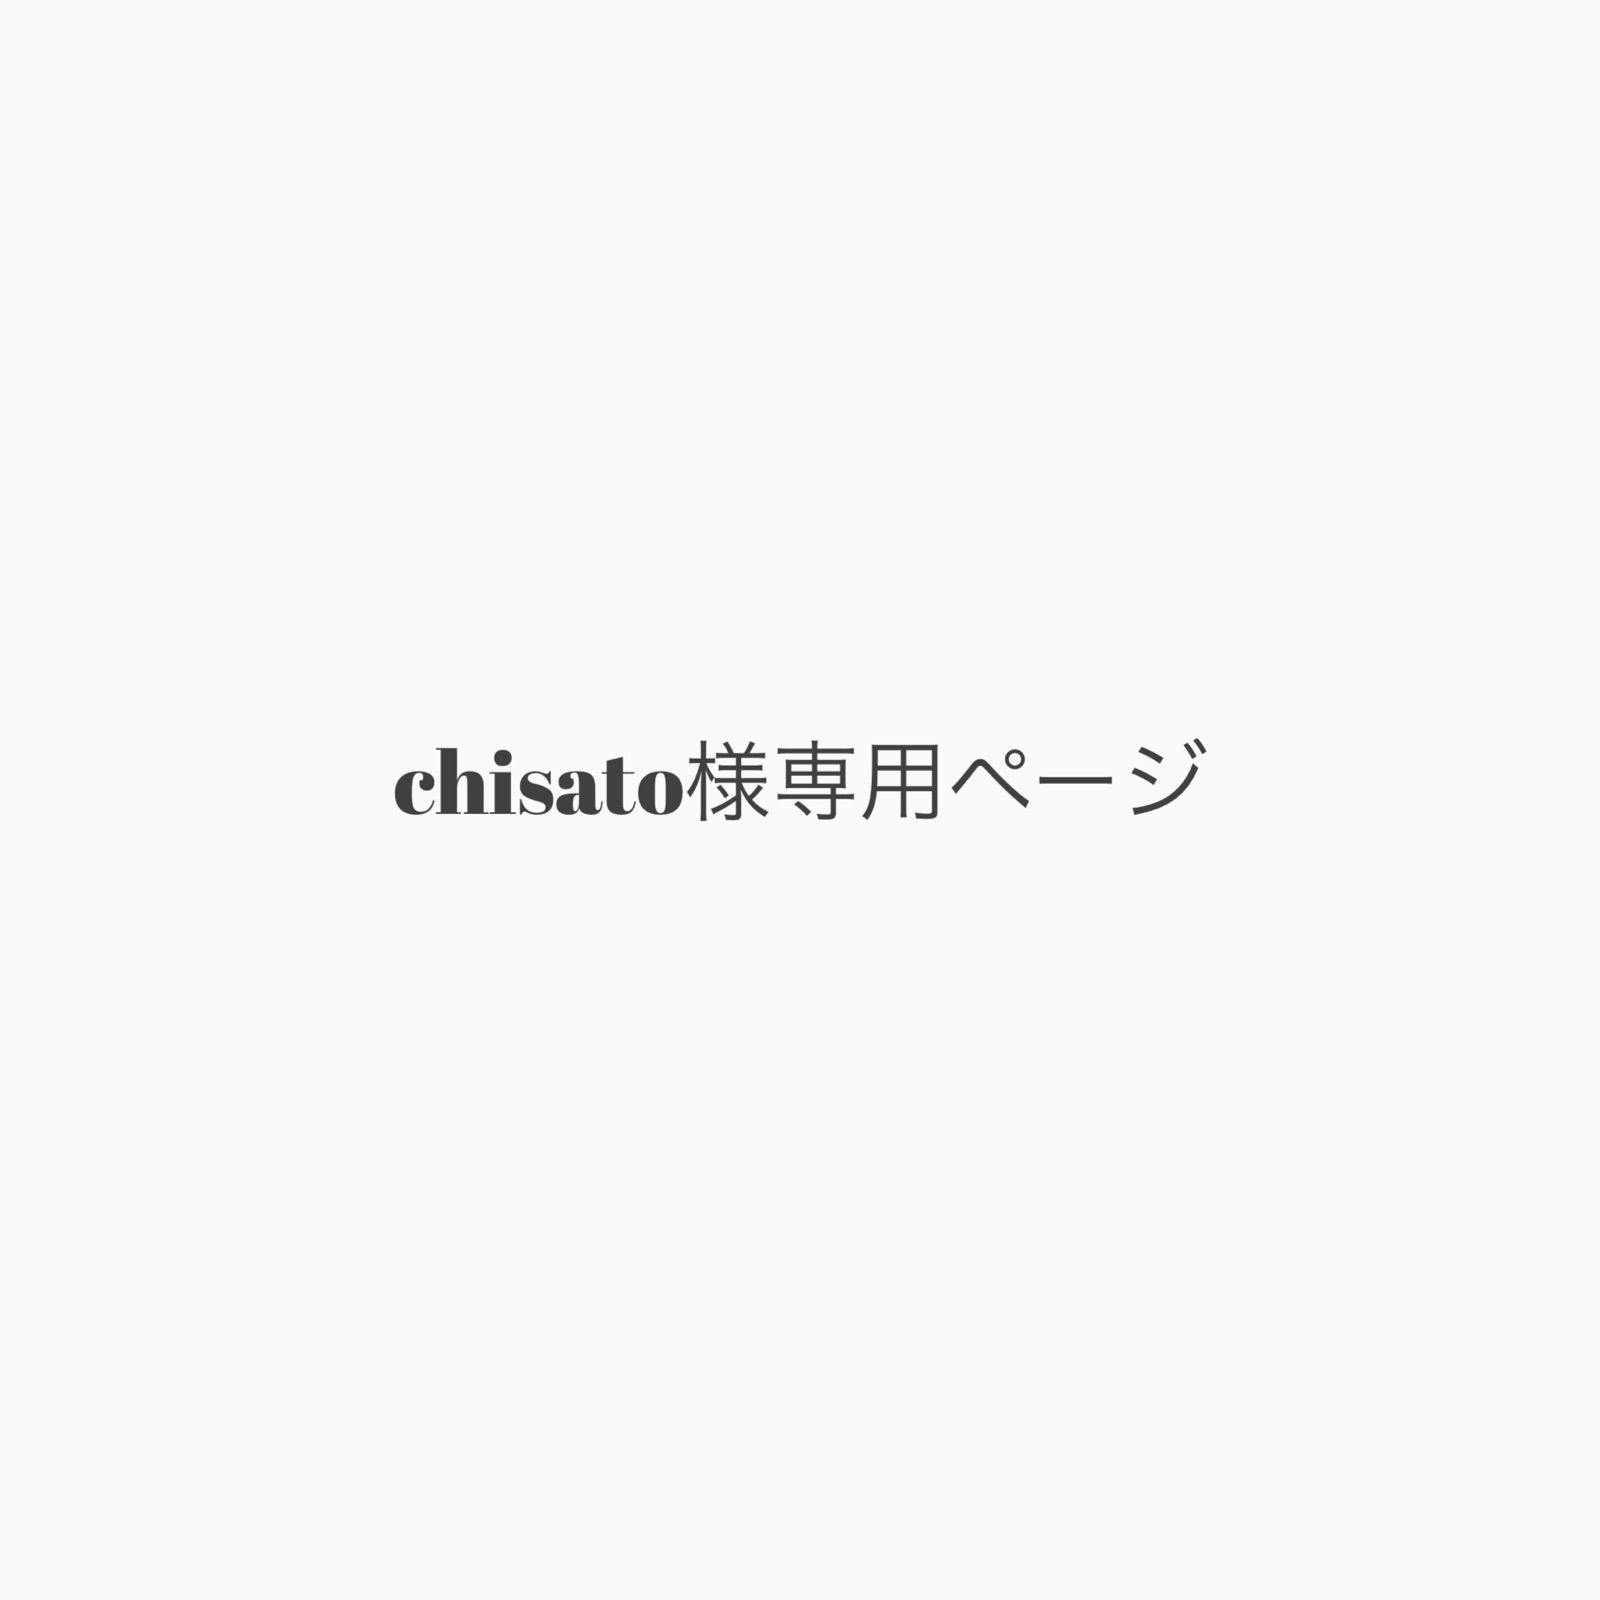 chisato様専用ページ - メルカリ